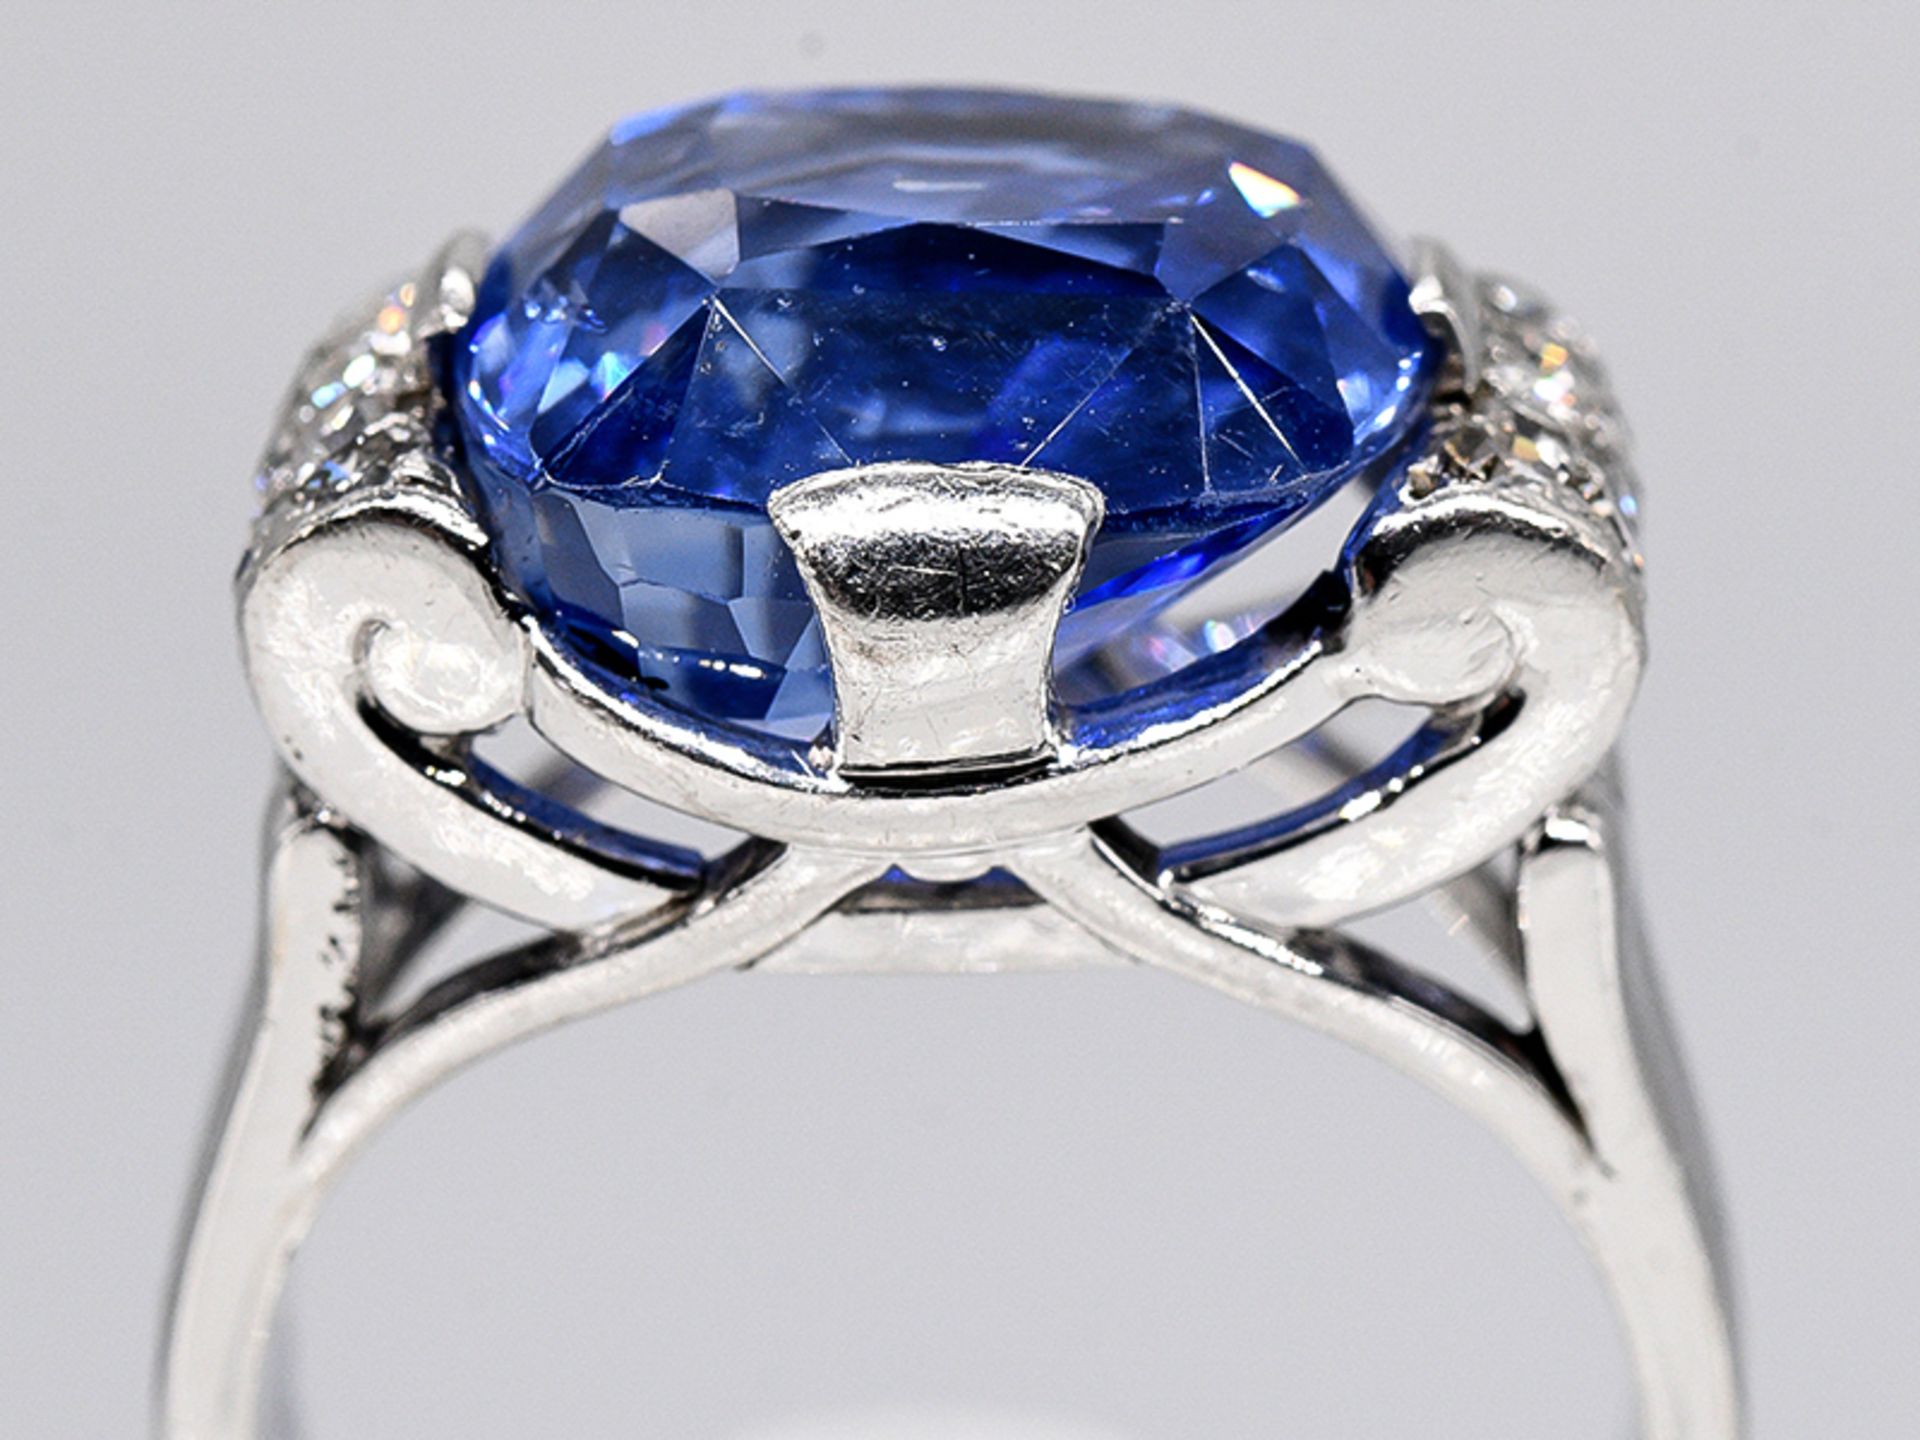 Massiver Ring mit Ceylon-Saphir ca. 15,19 ct und Achtkant-Diamanten, zus. ca. 0,5 ct, Juweliersarbe - Bild 4 aus 14